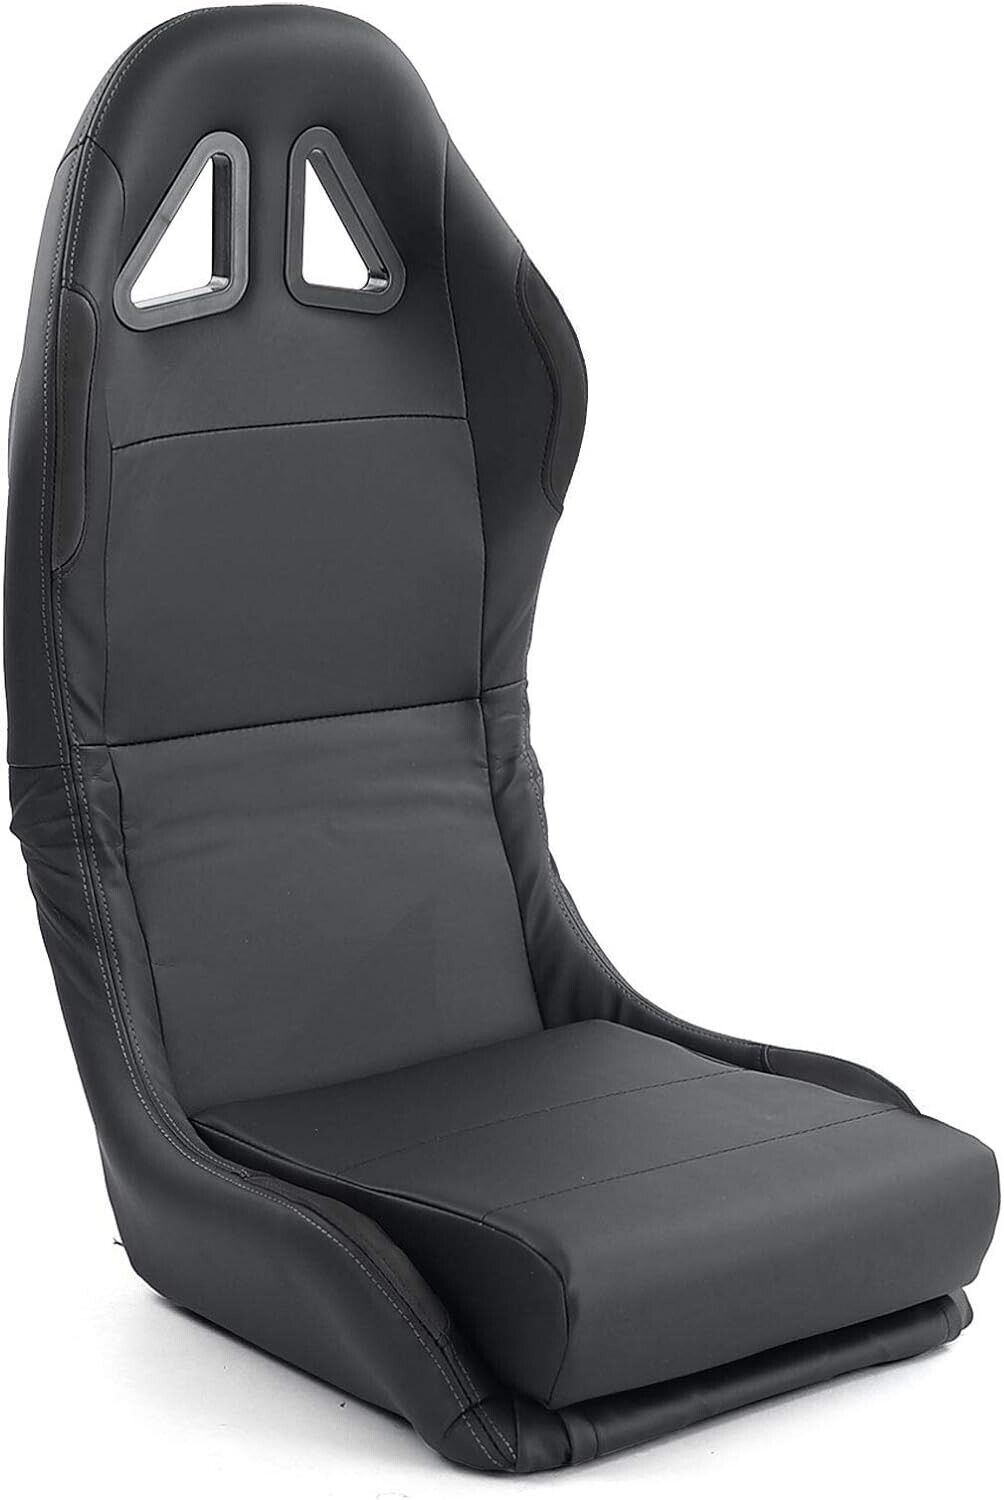 TZ x1 Universal Folding Bucket Sports Seat Black Vinyl Car Racing Simulator Sim